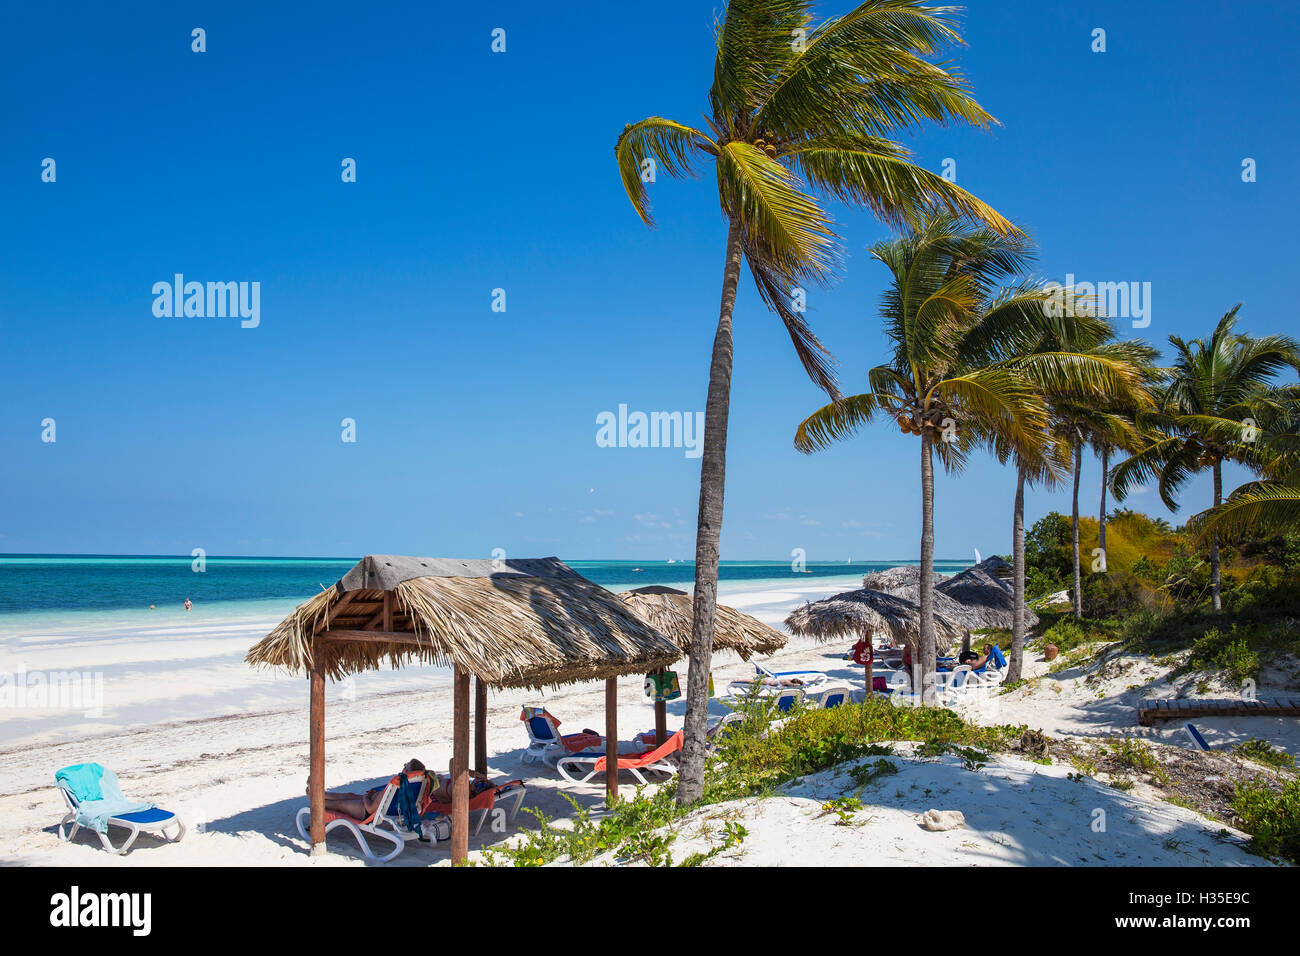 Playa El Paso, Cayo Guillermo, Jardines del Rey, Ciego de Avila Province, Cuba, West Indies, Caribbean Stock Photo